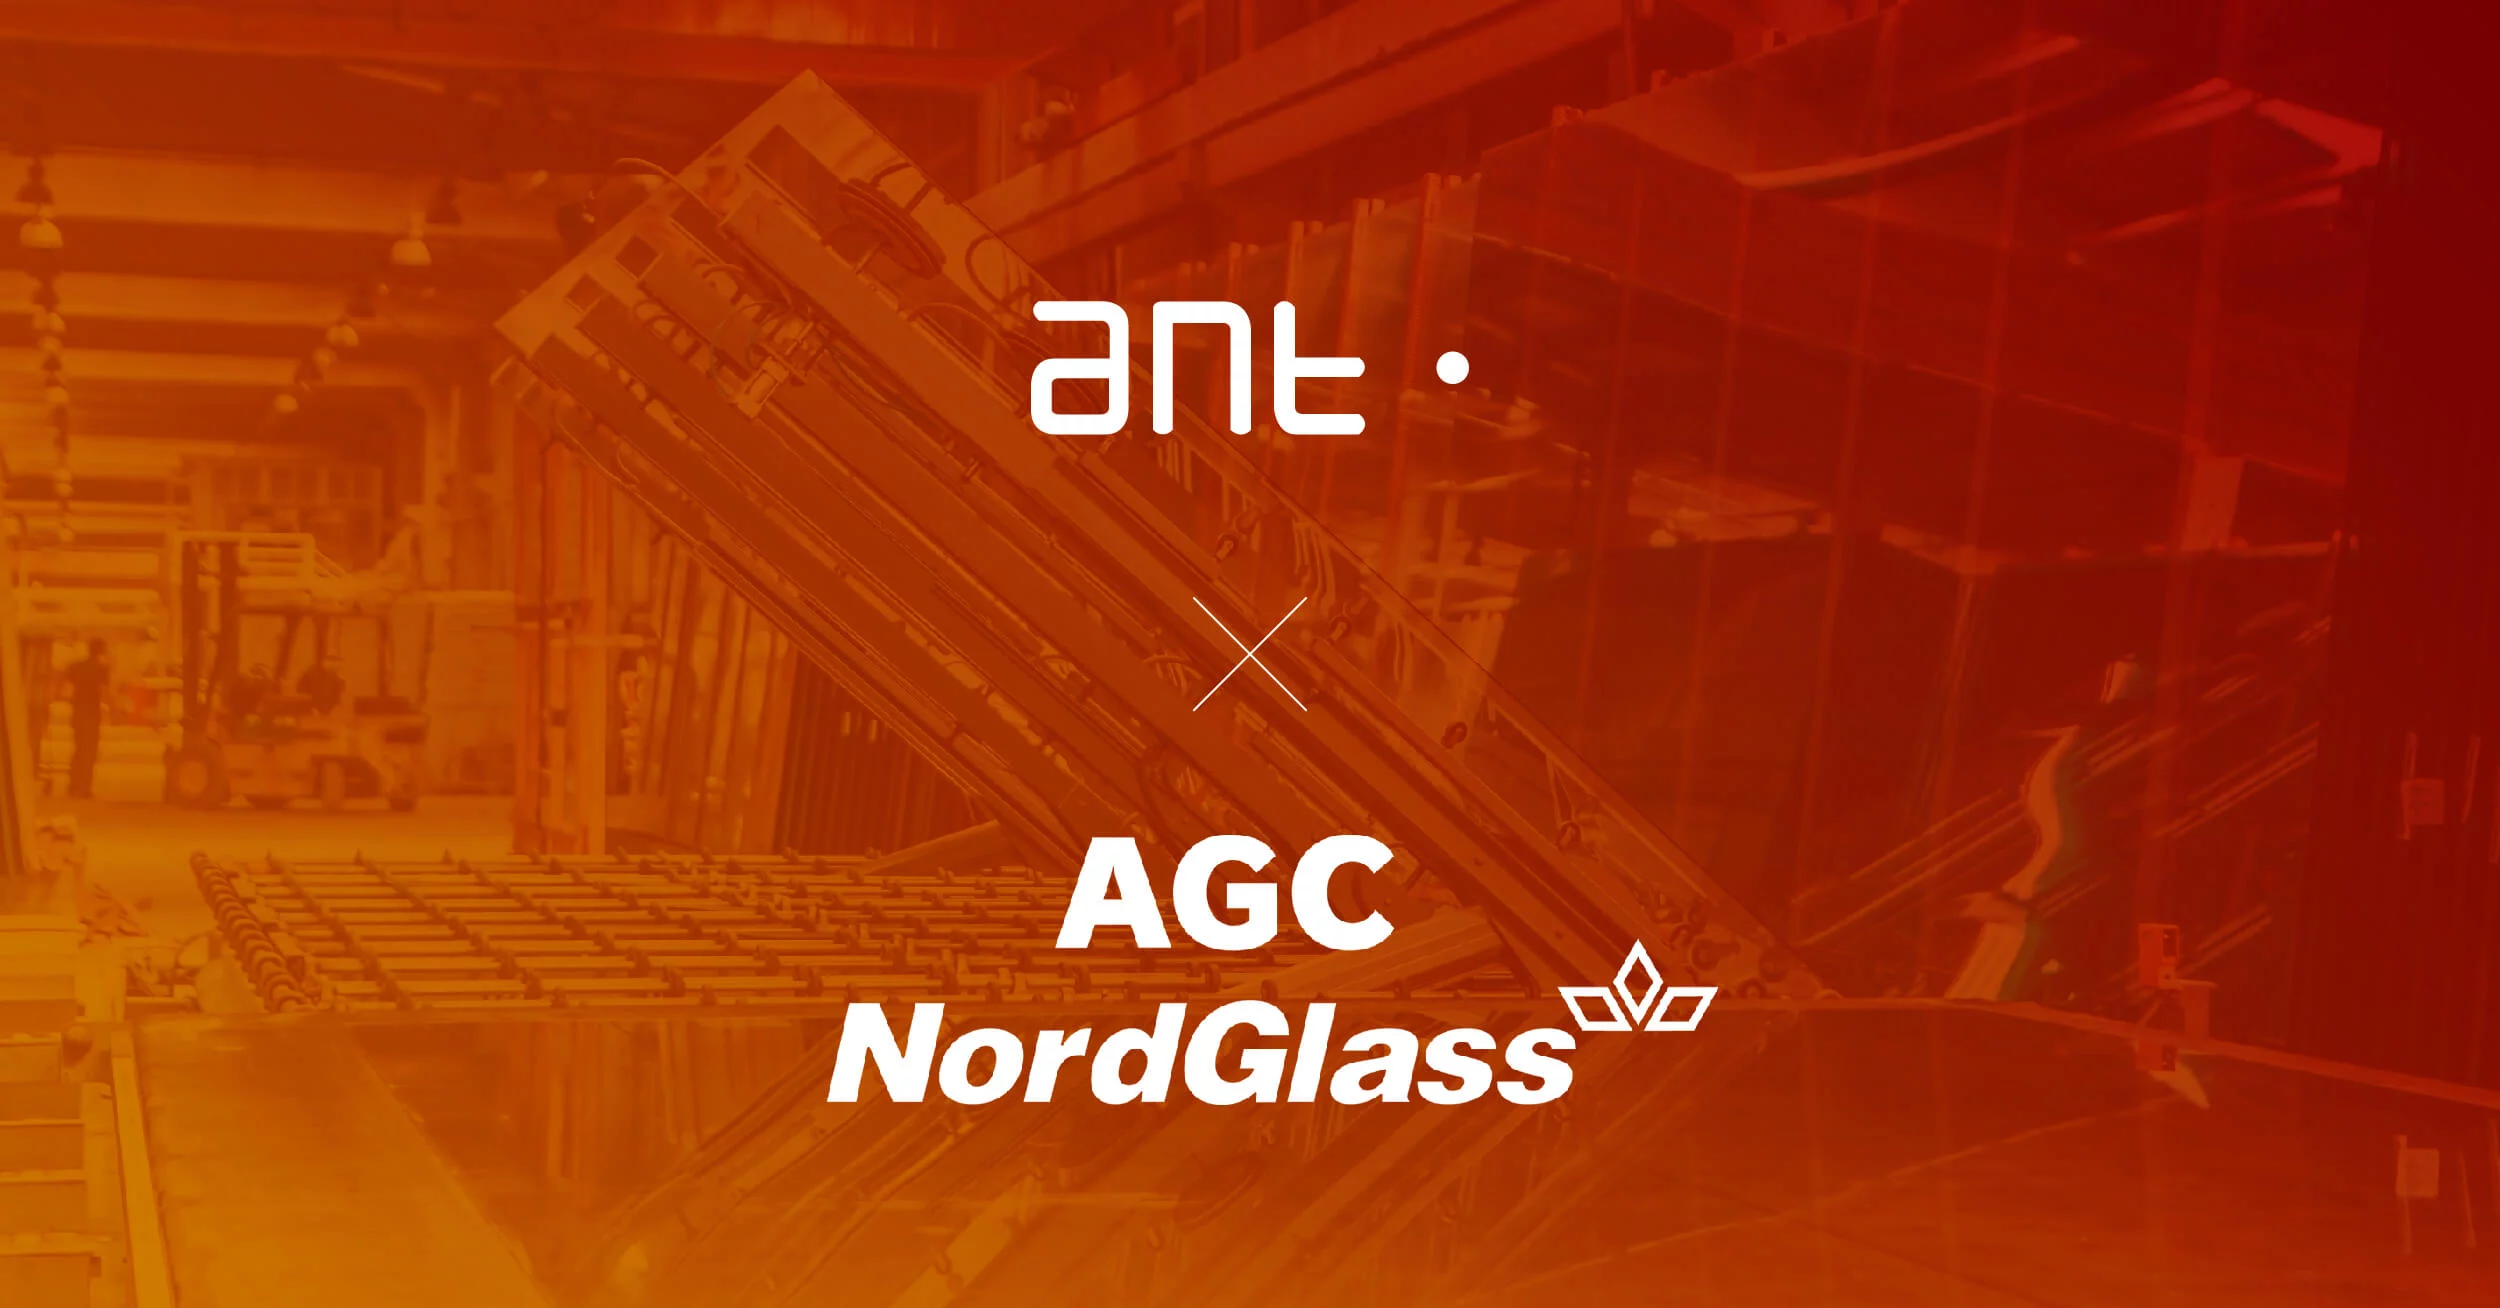 NordGlass与ANT解决方案公司正在开展合作